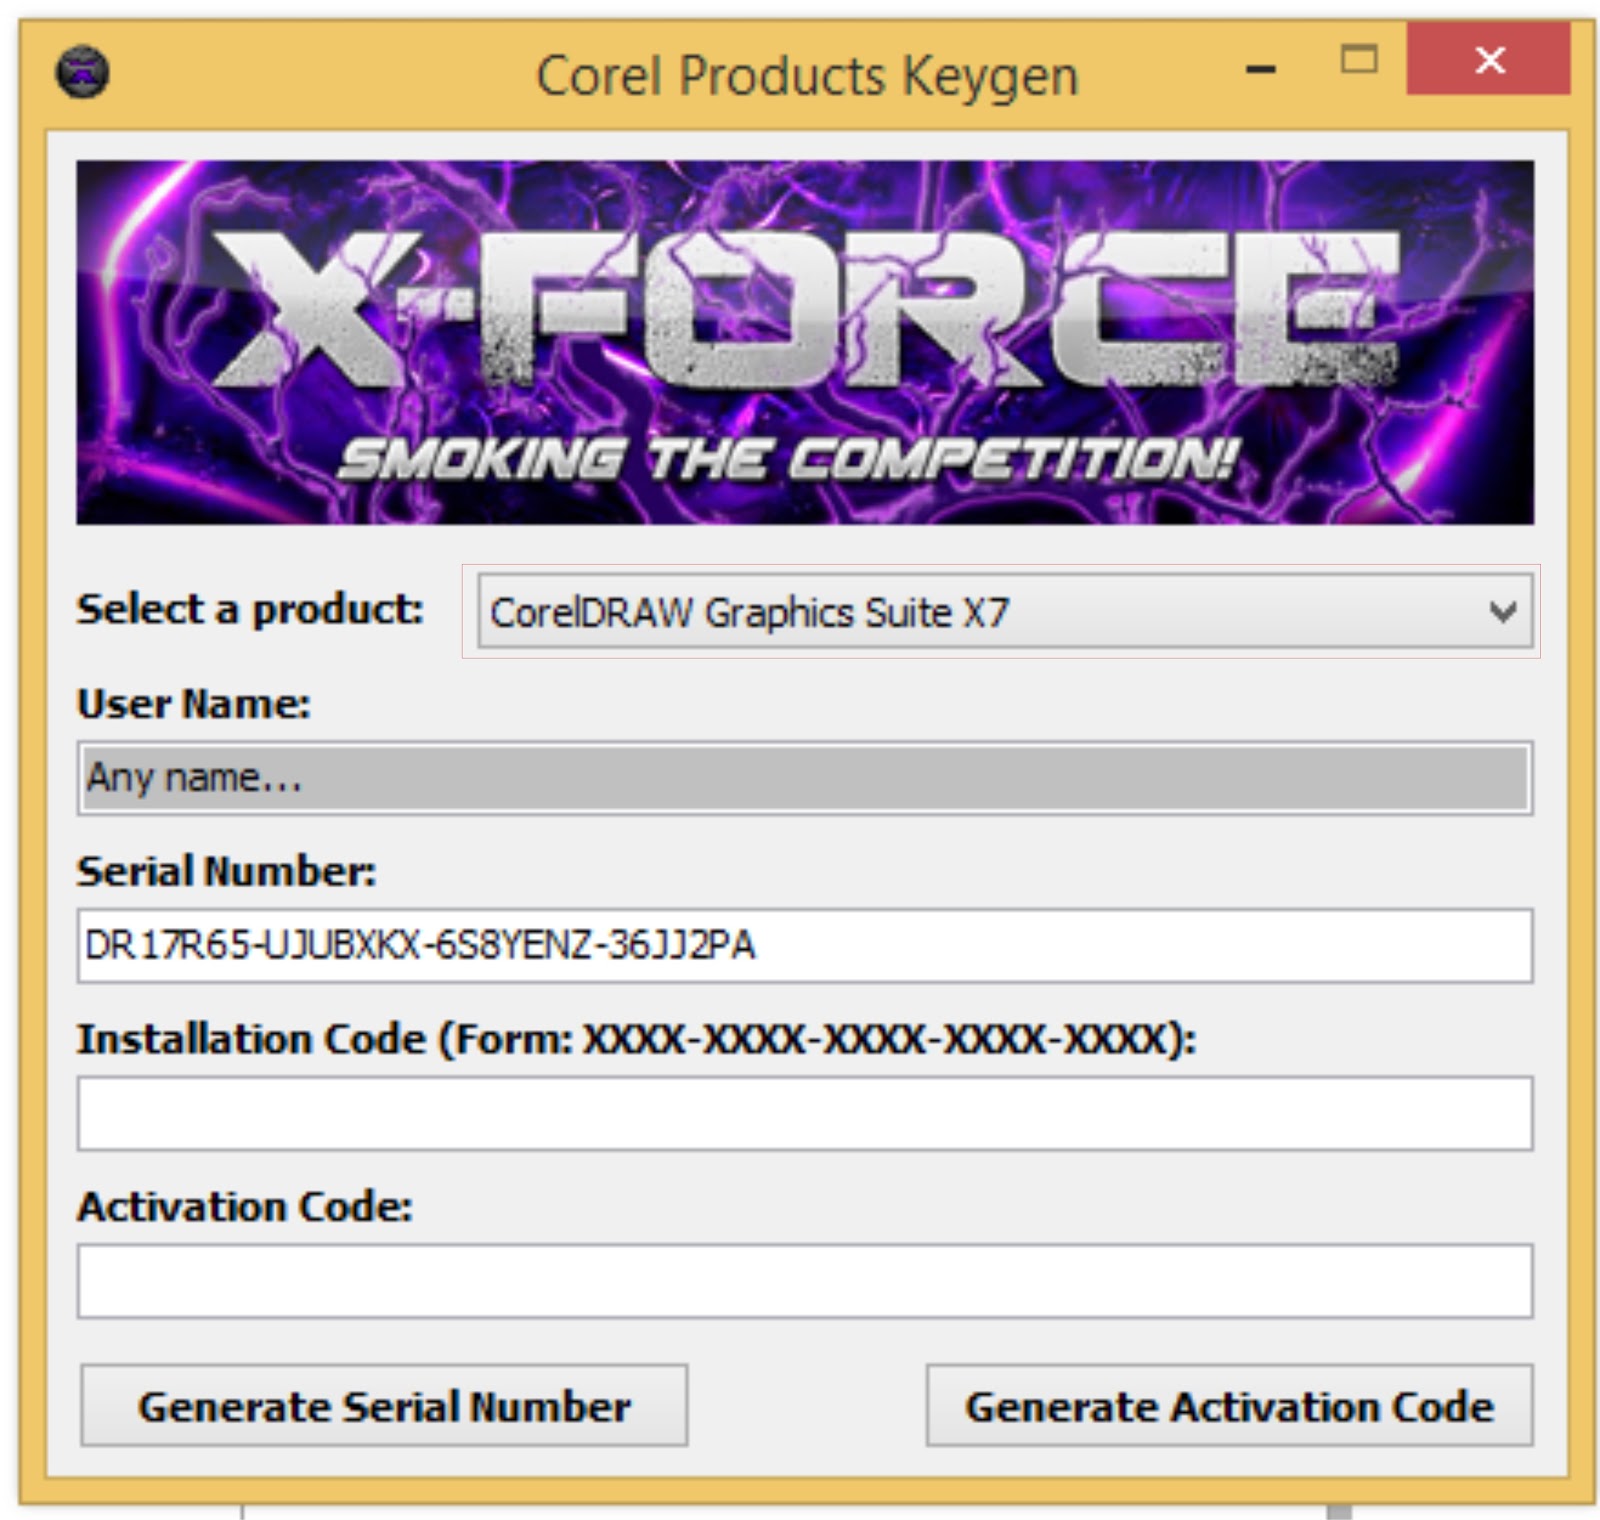 download coreldraw graphics suite x5 keygen